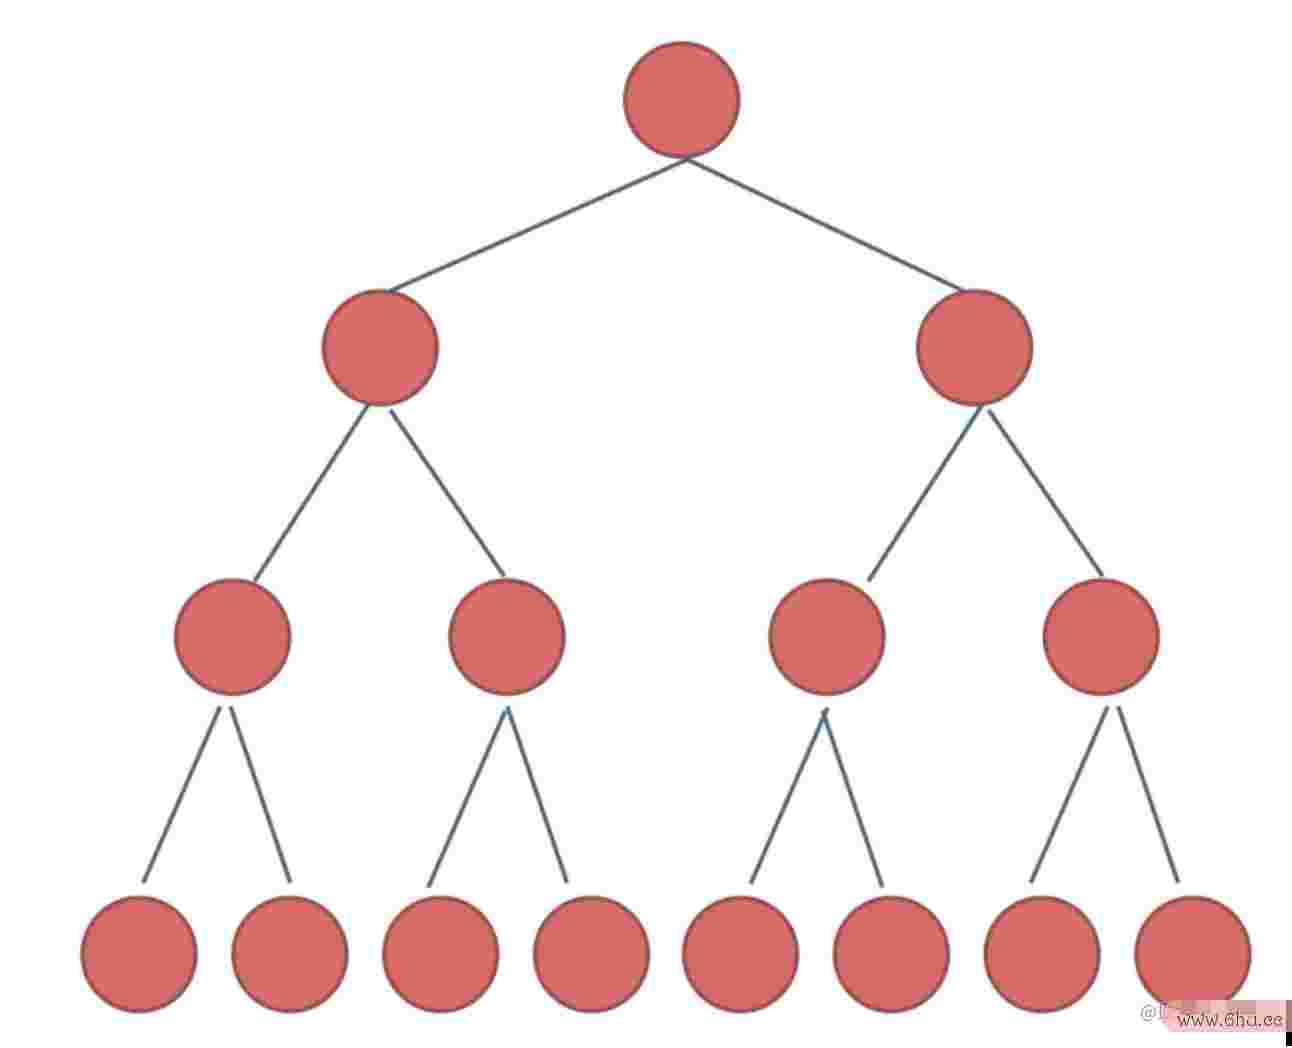 数据结构与算法七:树